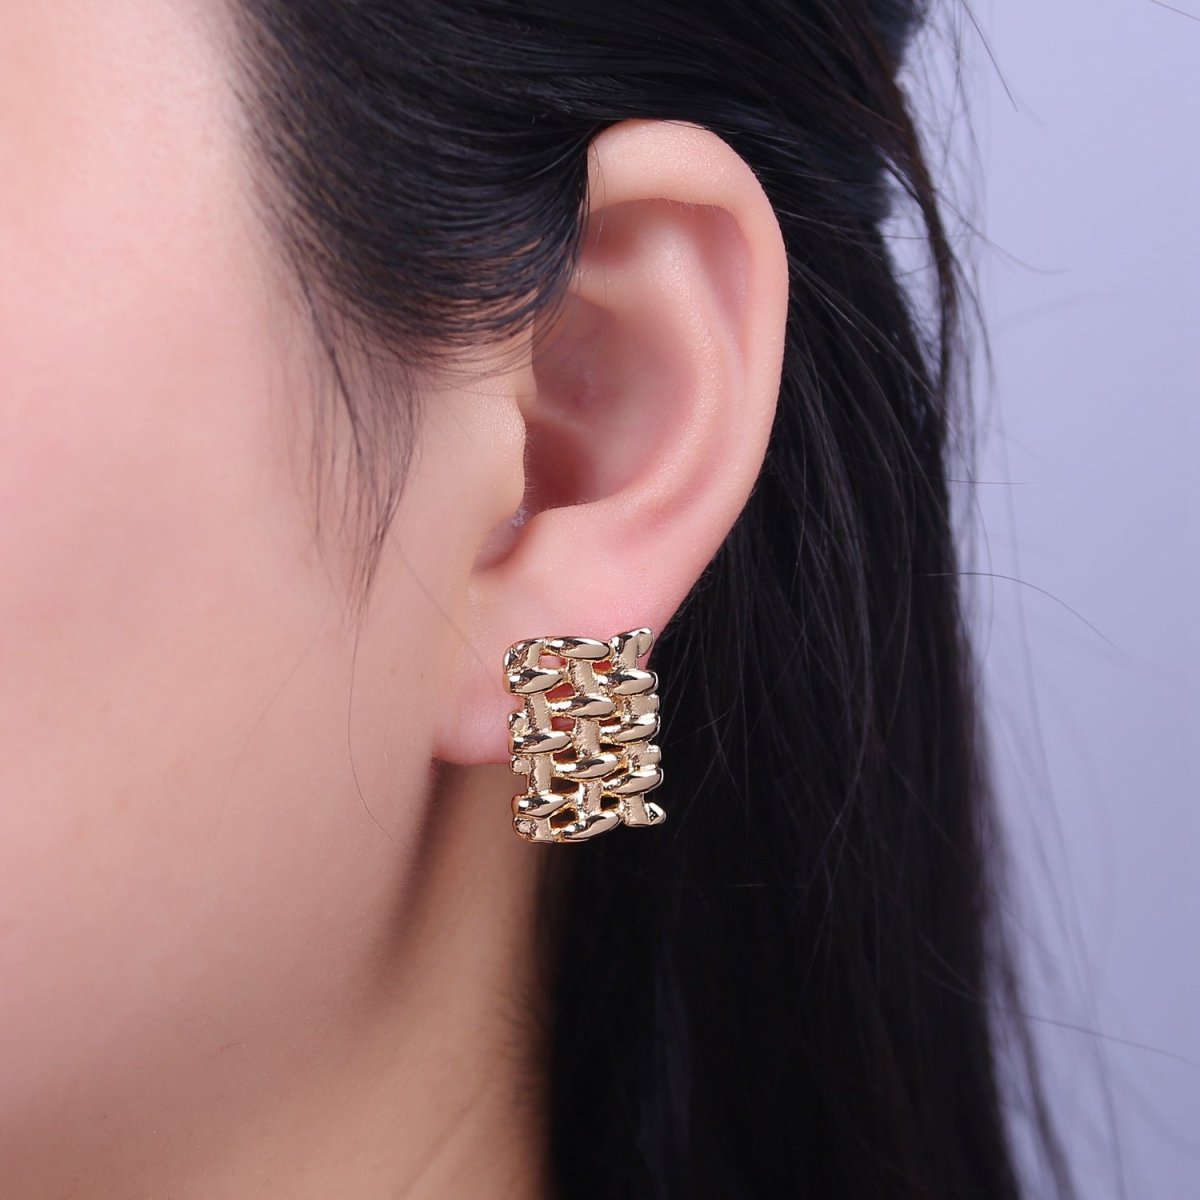 Geometric Rectangle Stud Earrings, 18k Gold fill Jewelry, Minimalist gold earrings, Small gold earrings for women V-136 - DLUXCA